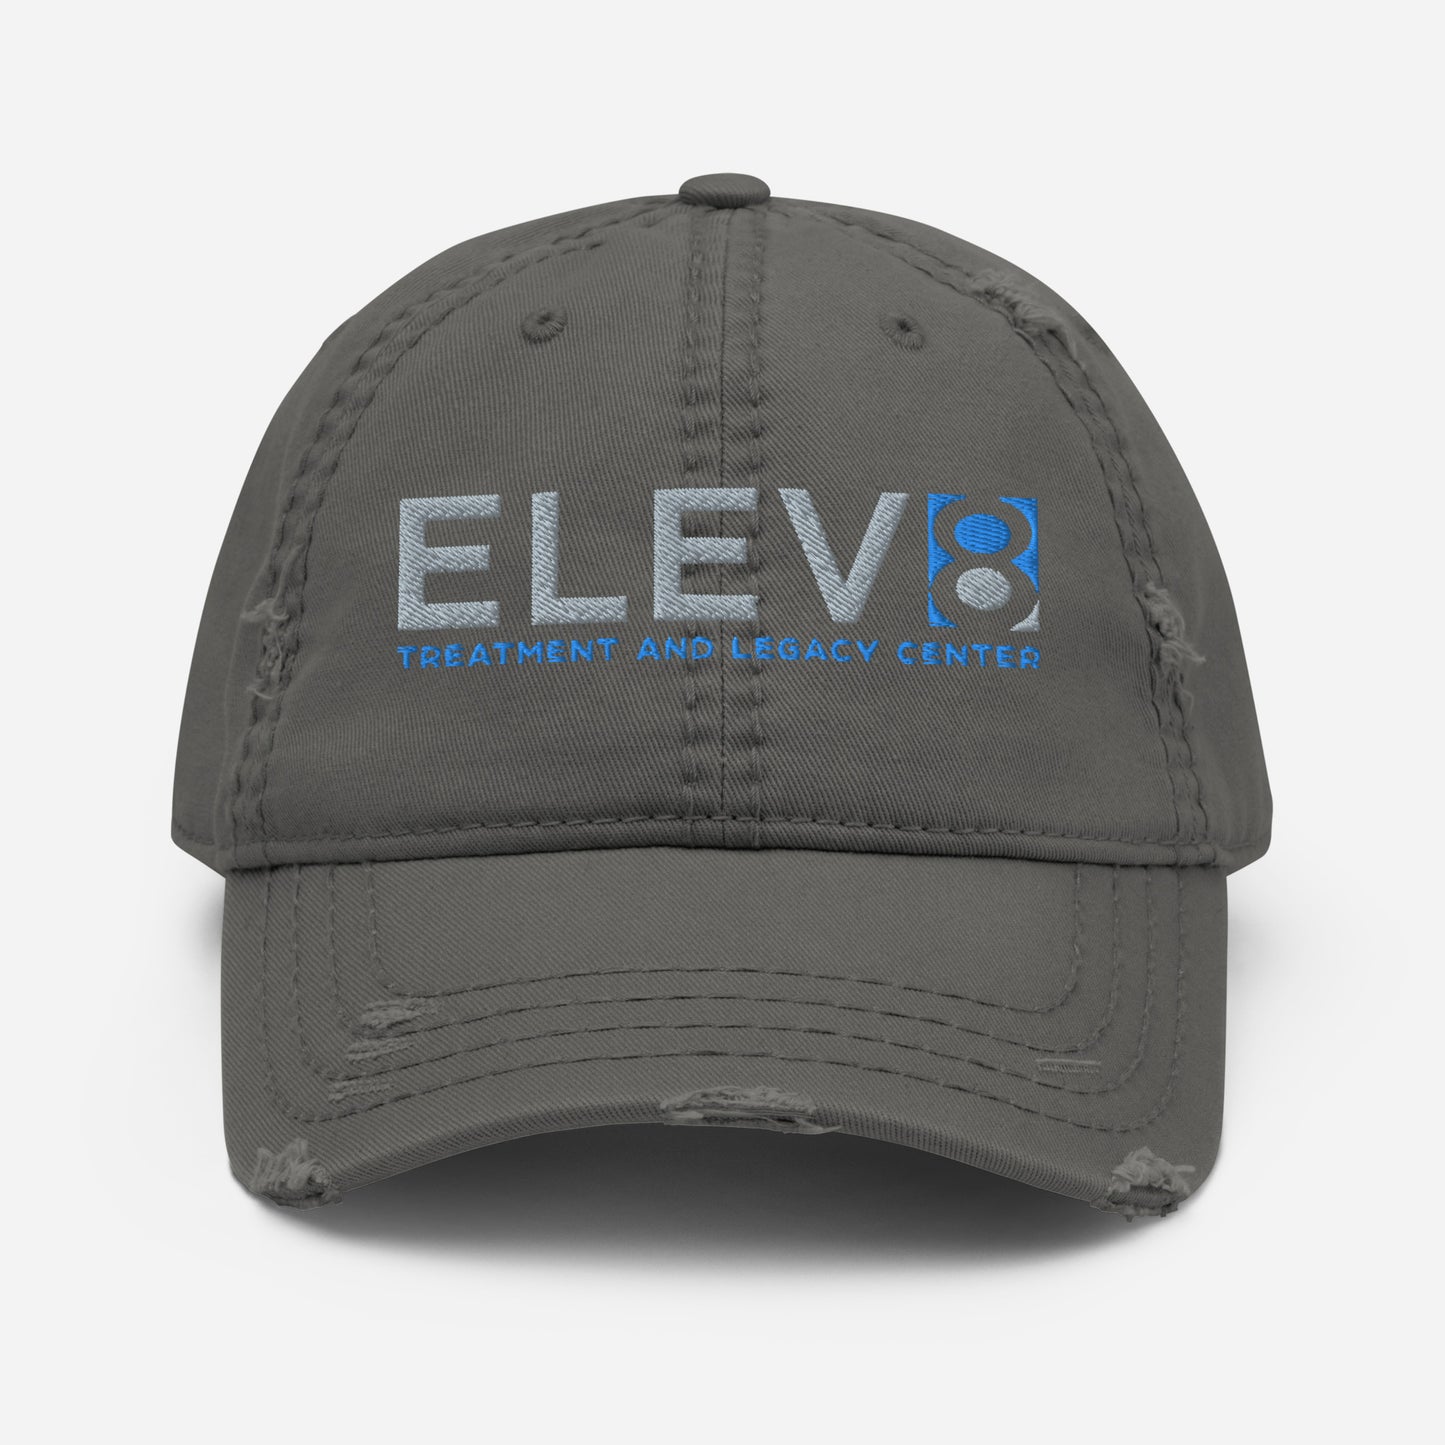 Elev8 Distressed Dad Hat